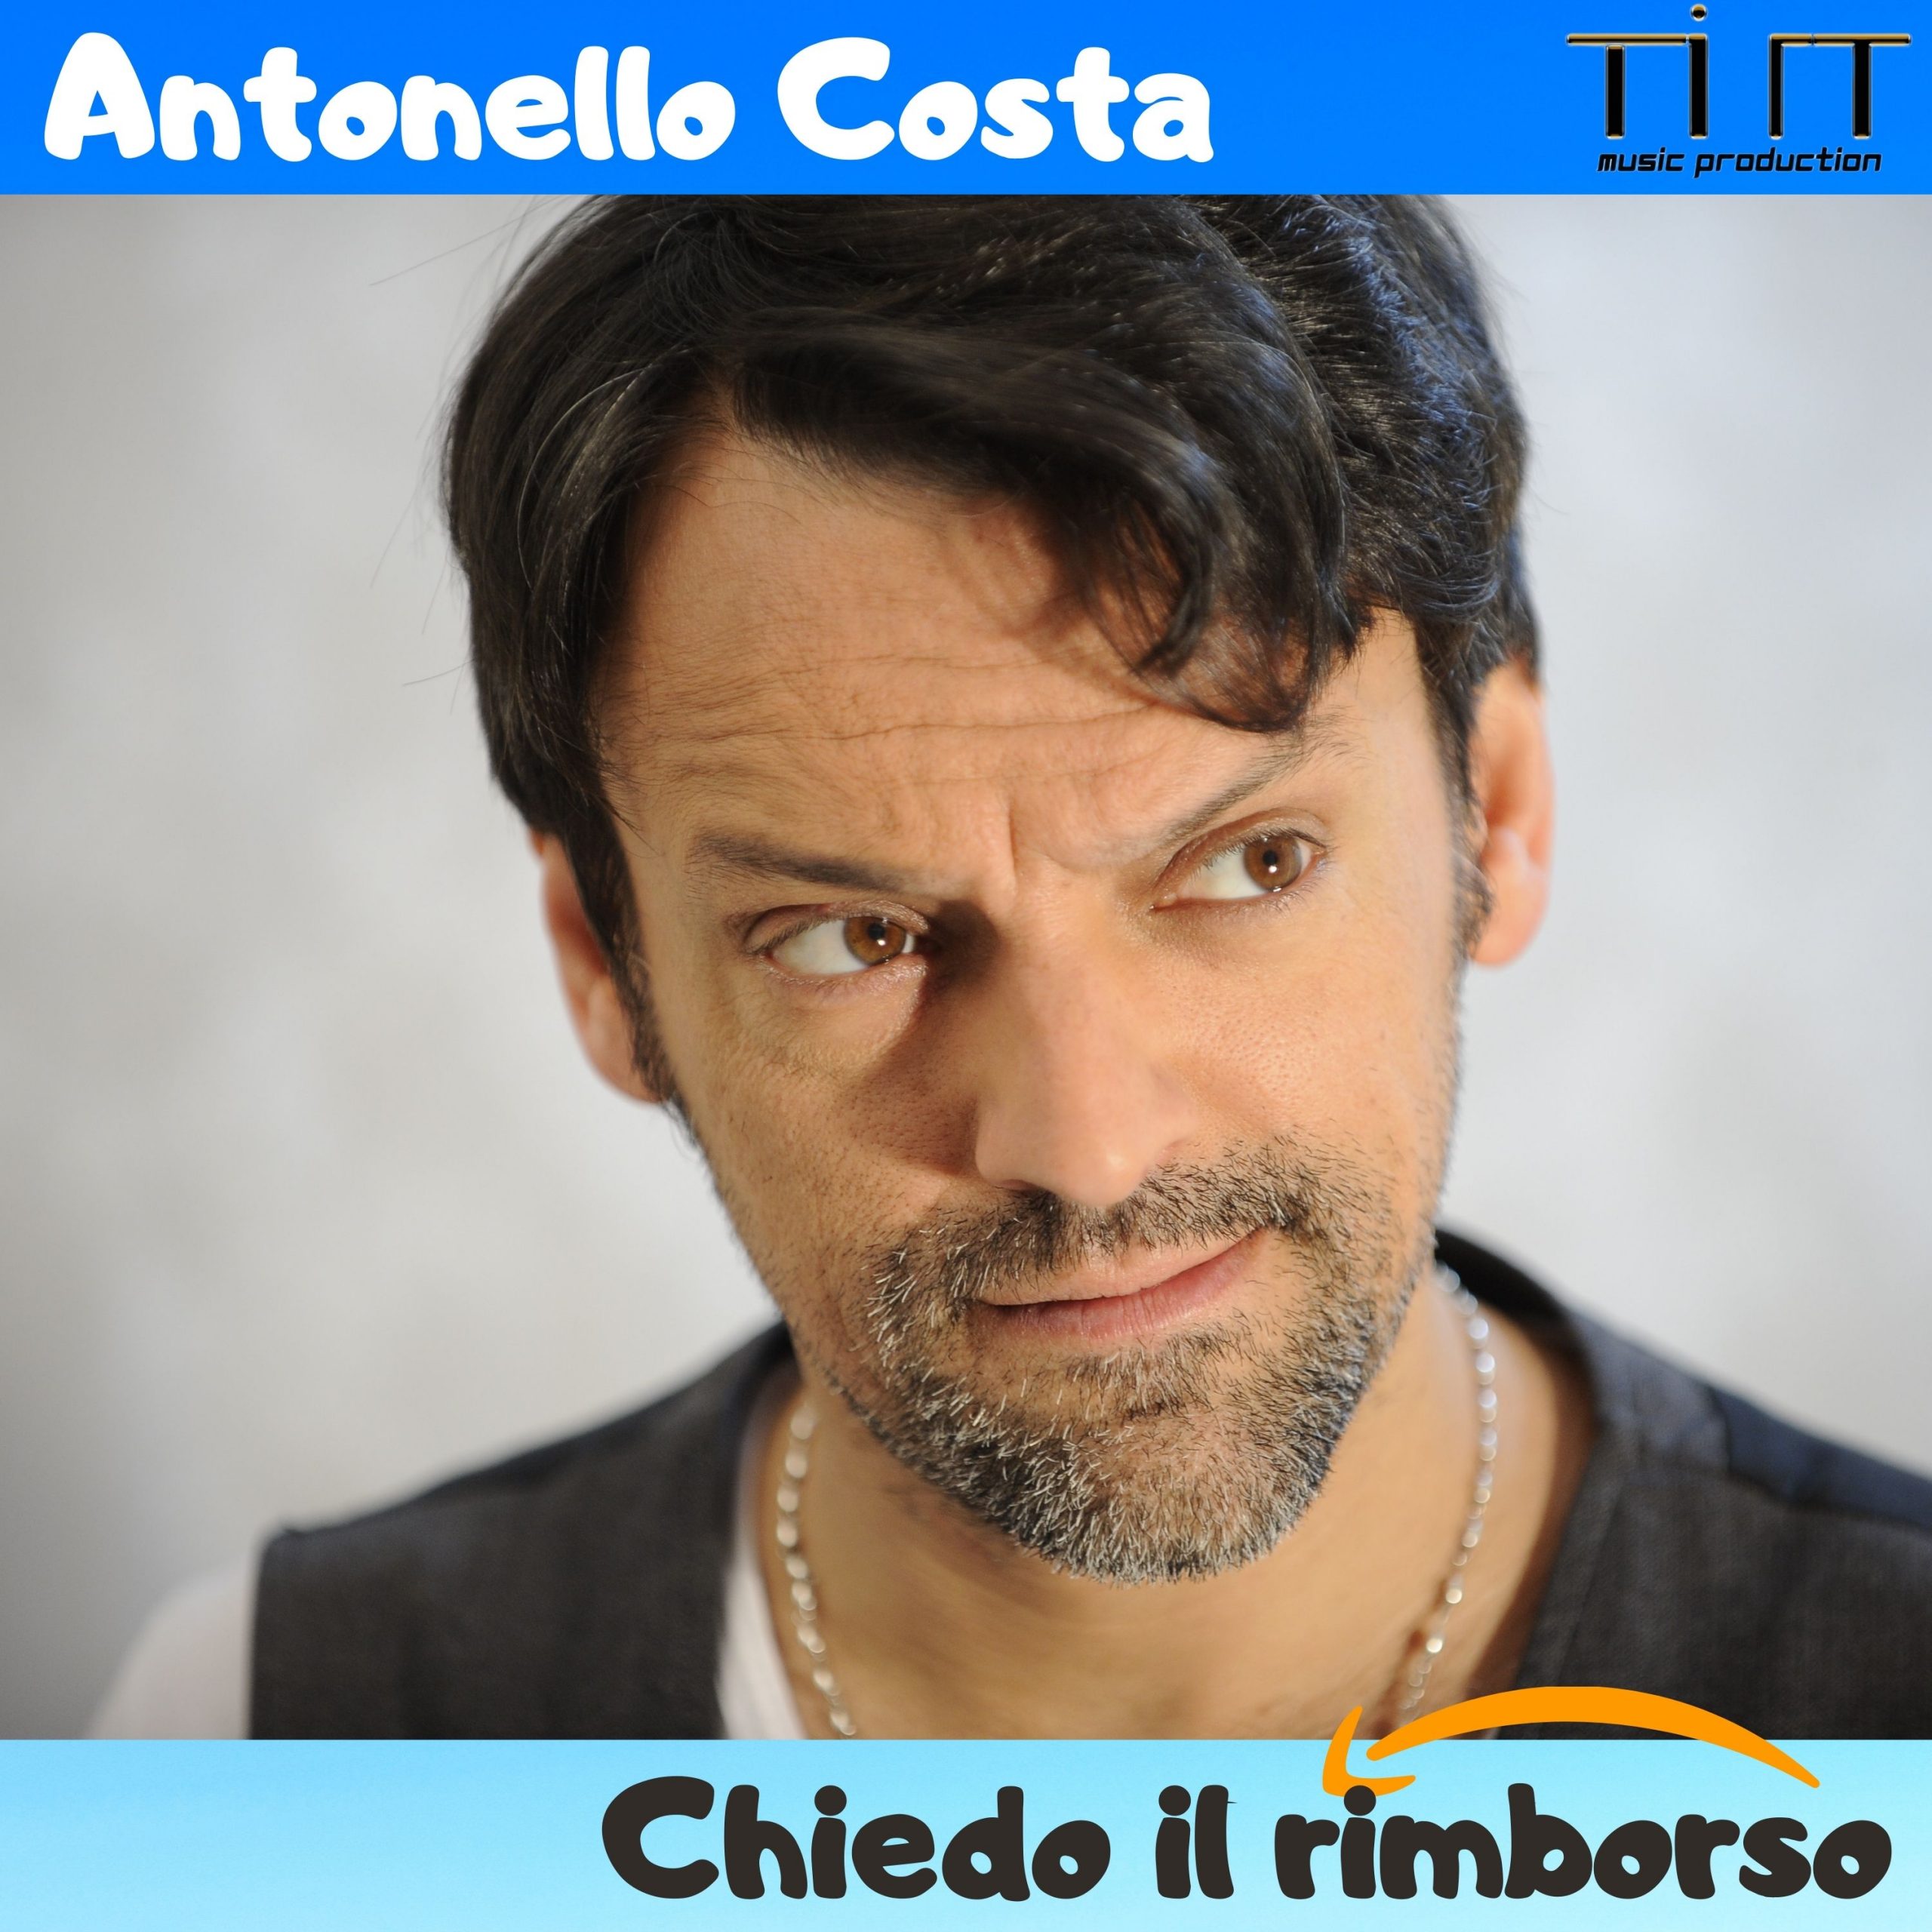 “Chiedo il rimborso”, il nuovo brano del noto comico e showman Antonello Costa, è disponibile in streaming e digital download